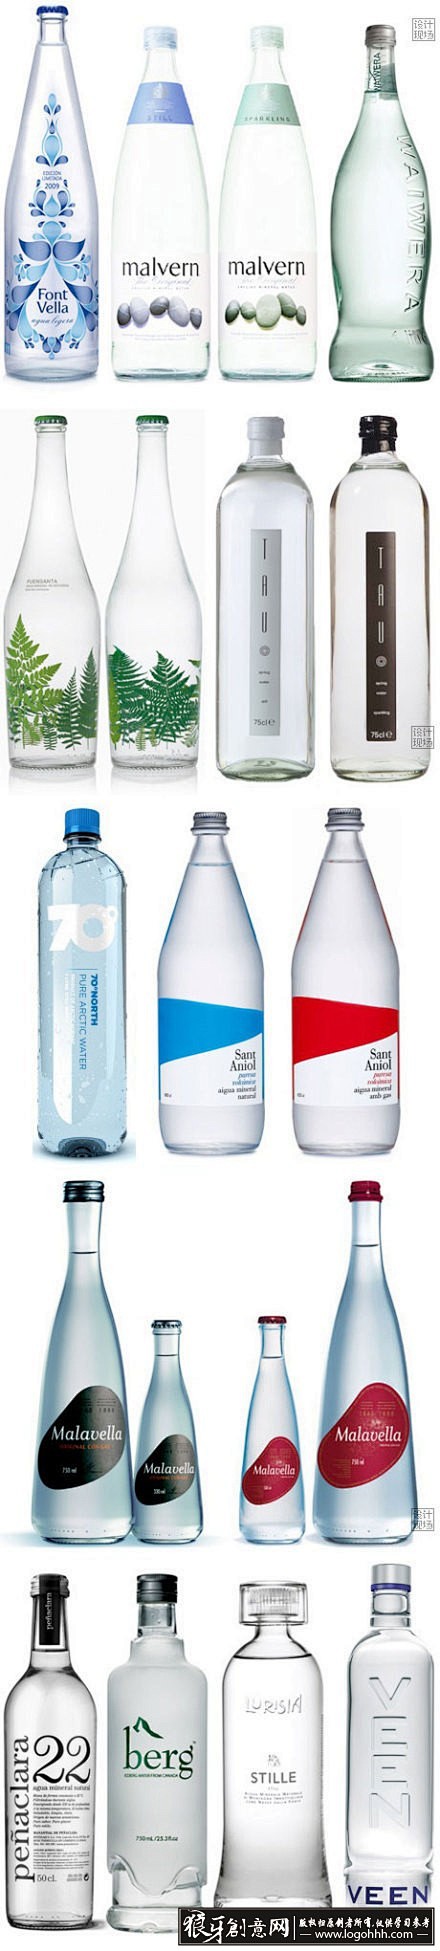 包装设计灵感 各种瓶子包装 创意瓶身设计...